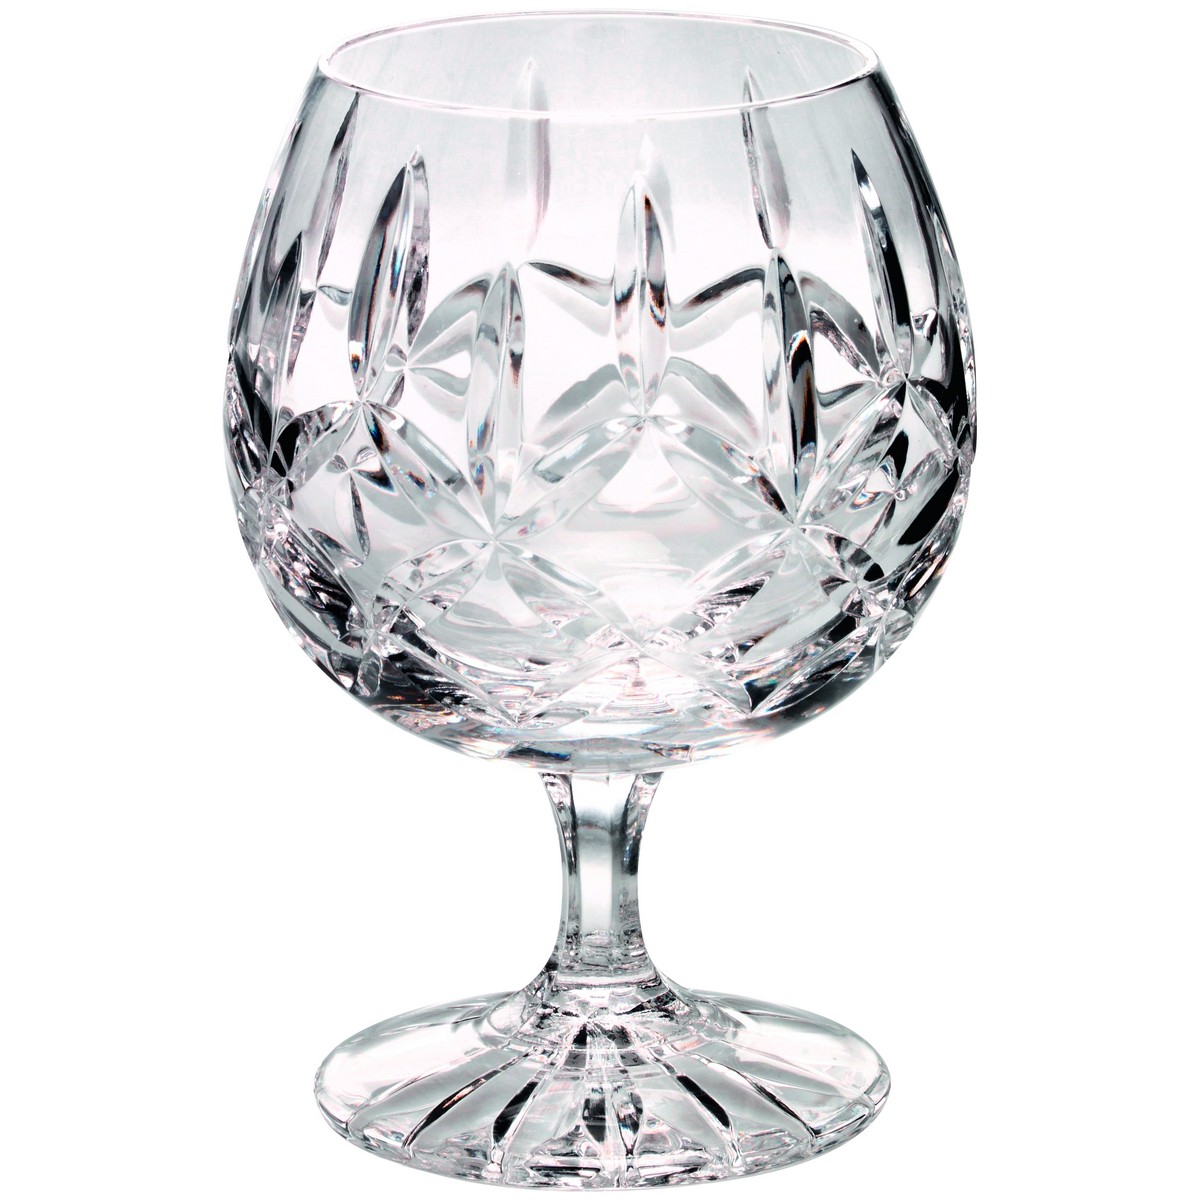 290ML BRANDY GLASS 4.75in